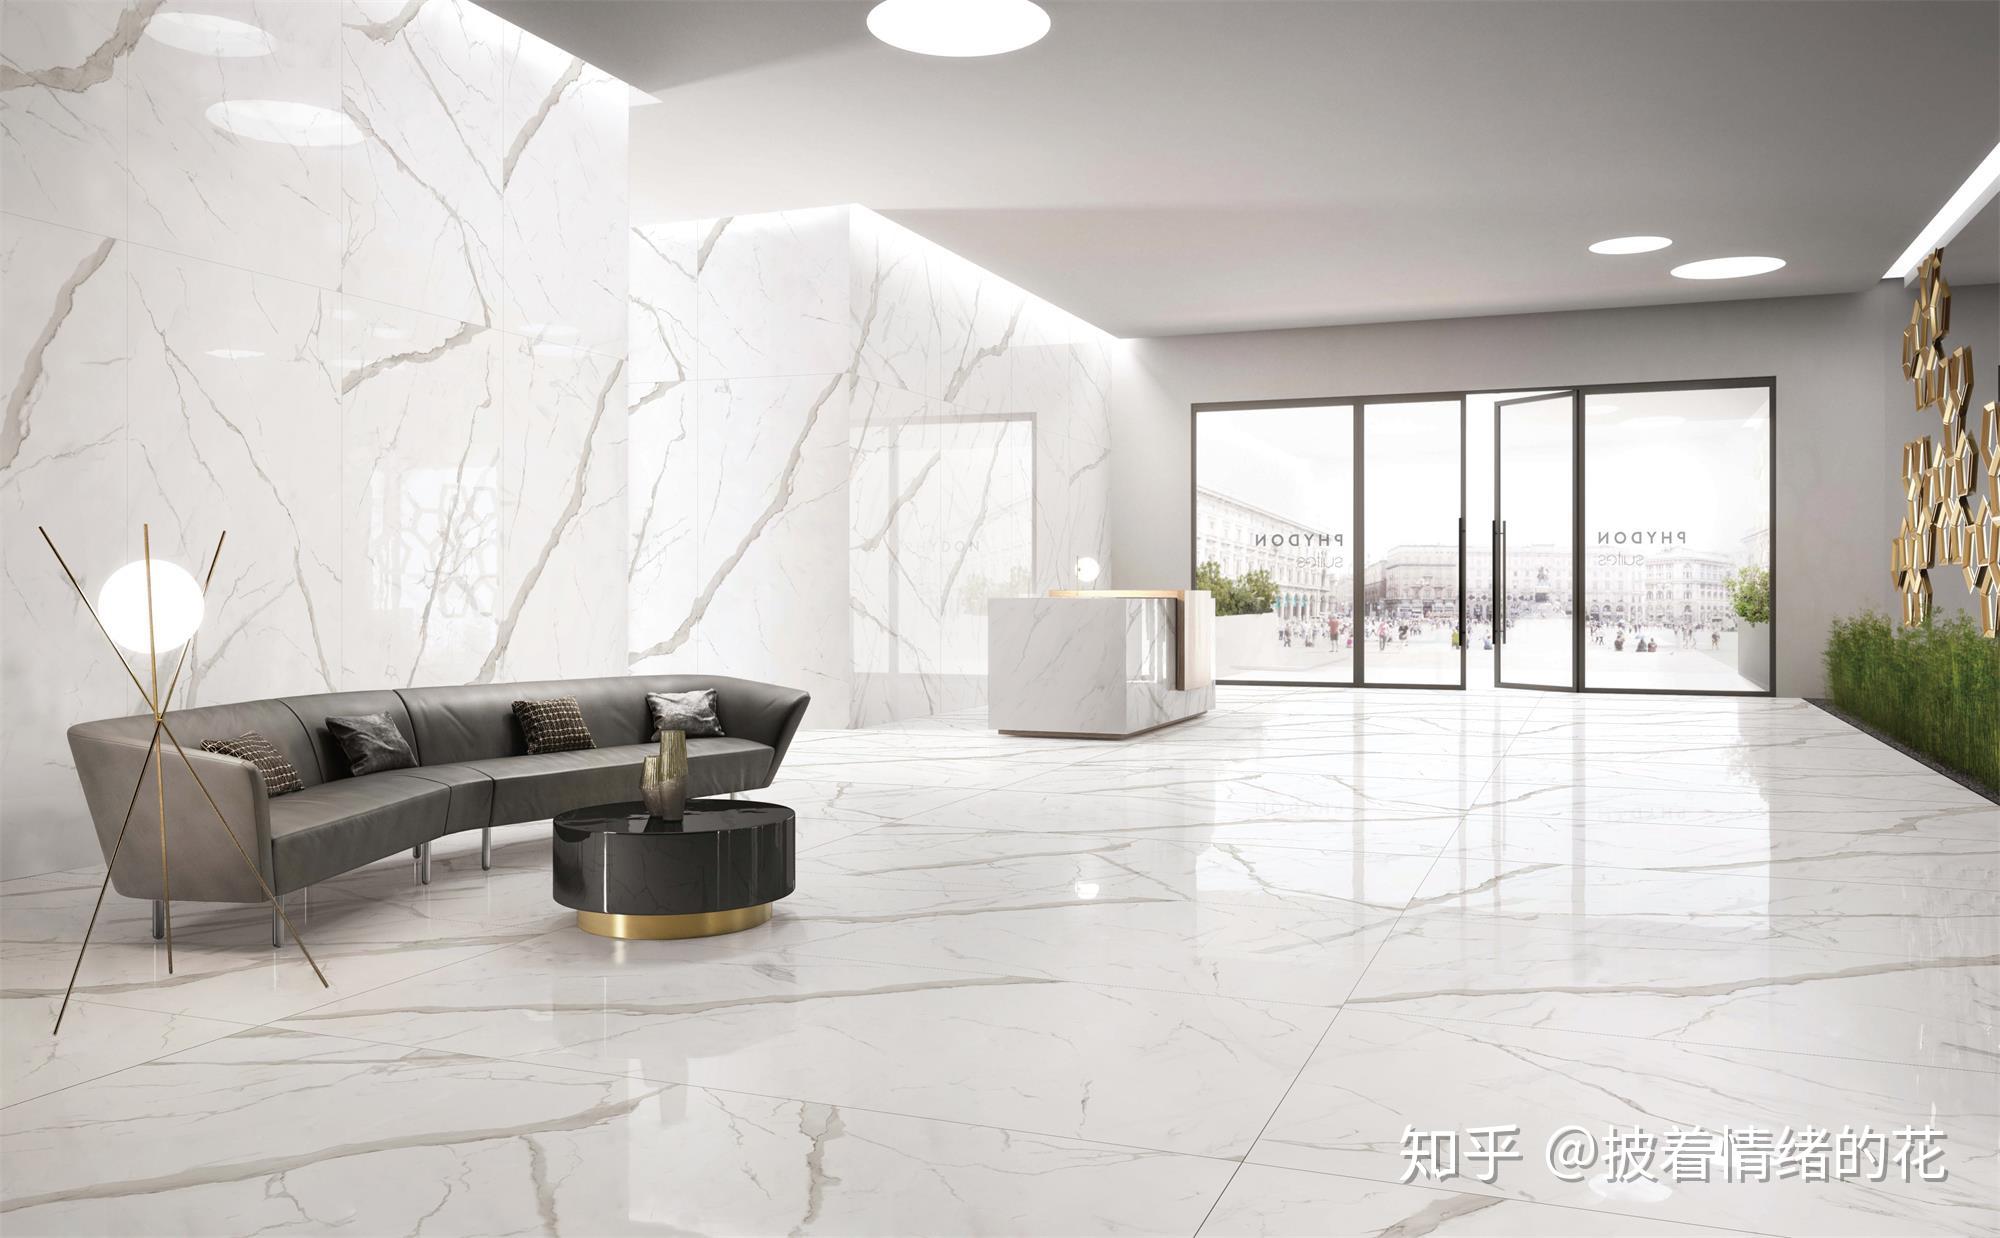 3款瓷砖流行色,格仕陶瓷砖一线品牌打造雅致家居空间